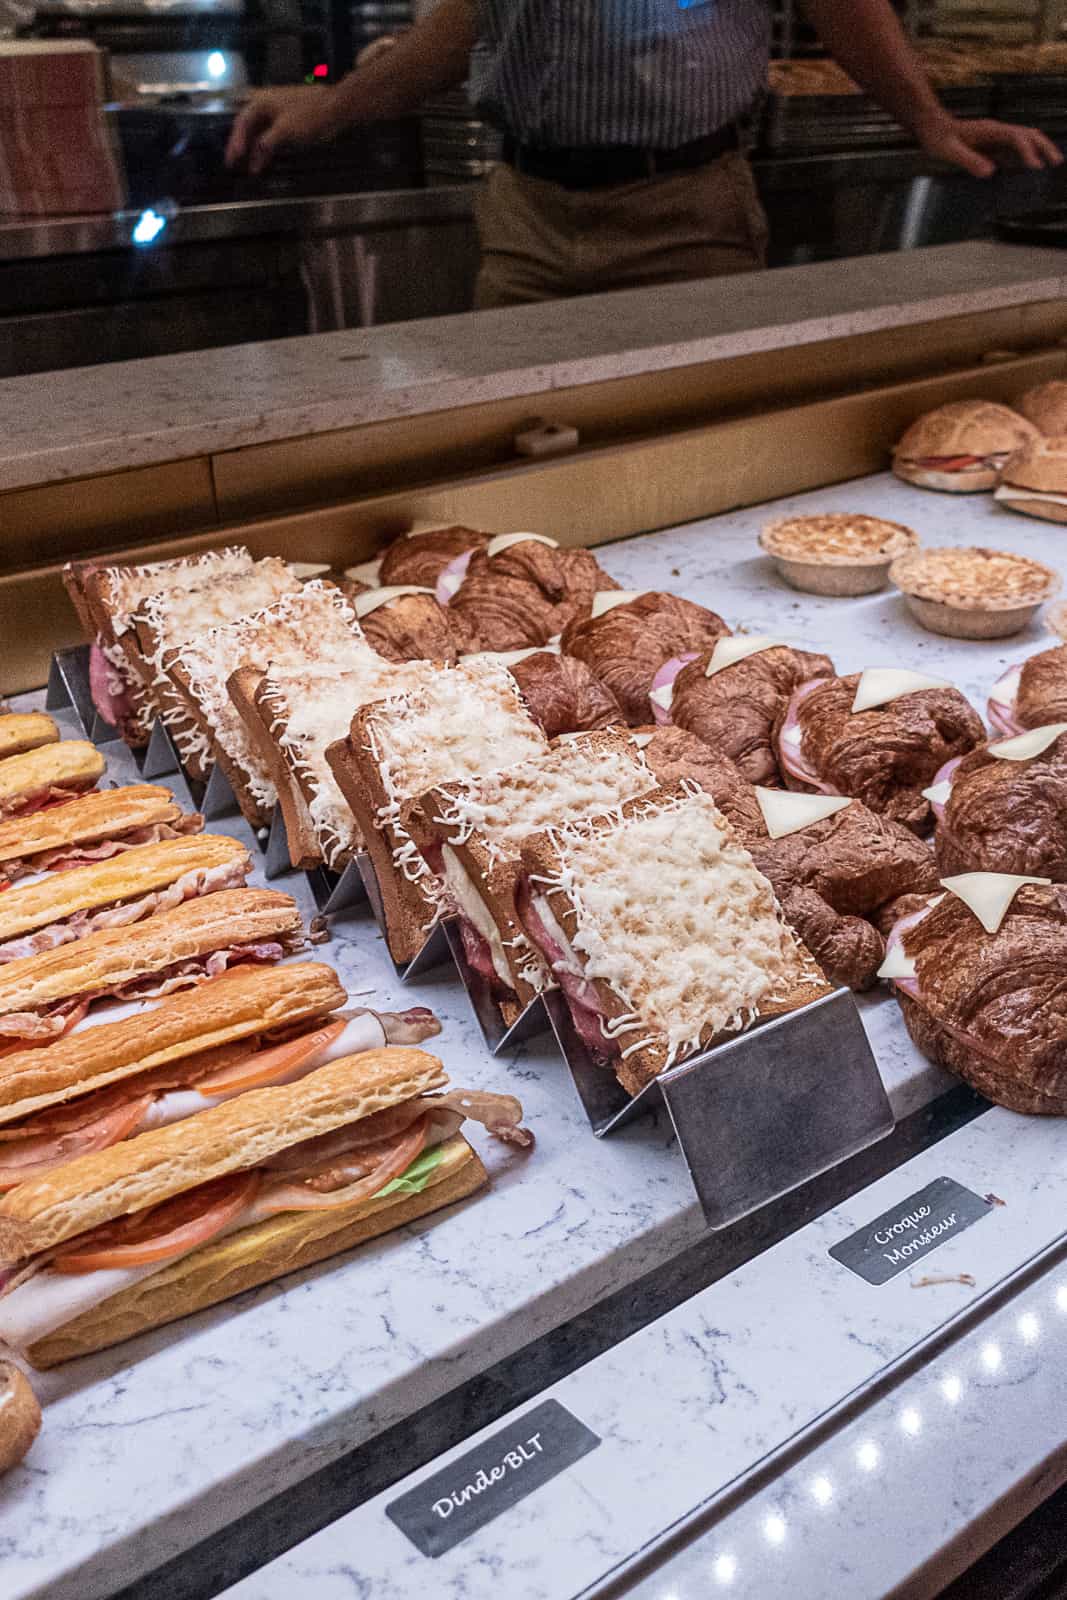 Croque monsieur sandwiches and baguettes at Les Halles Epcot Restaurant